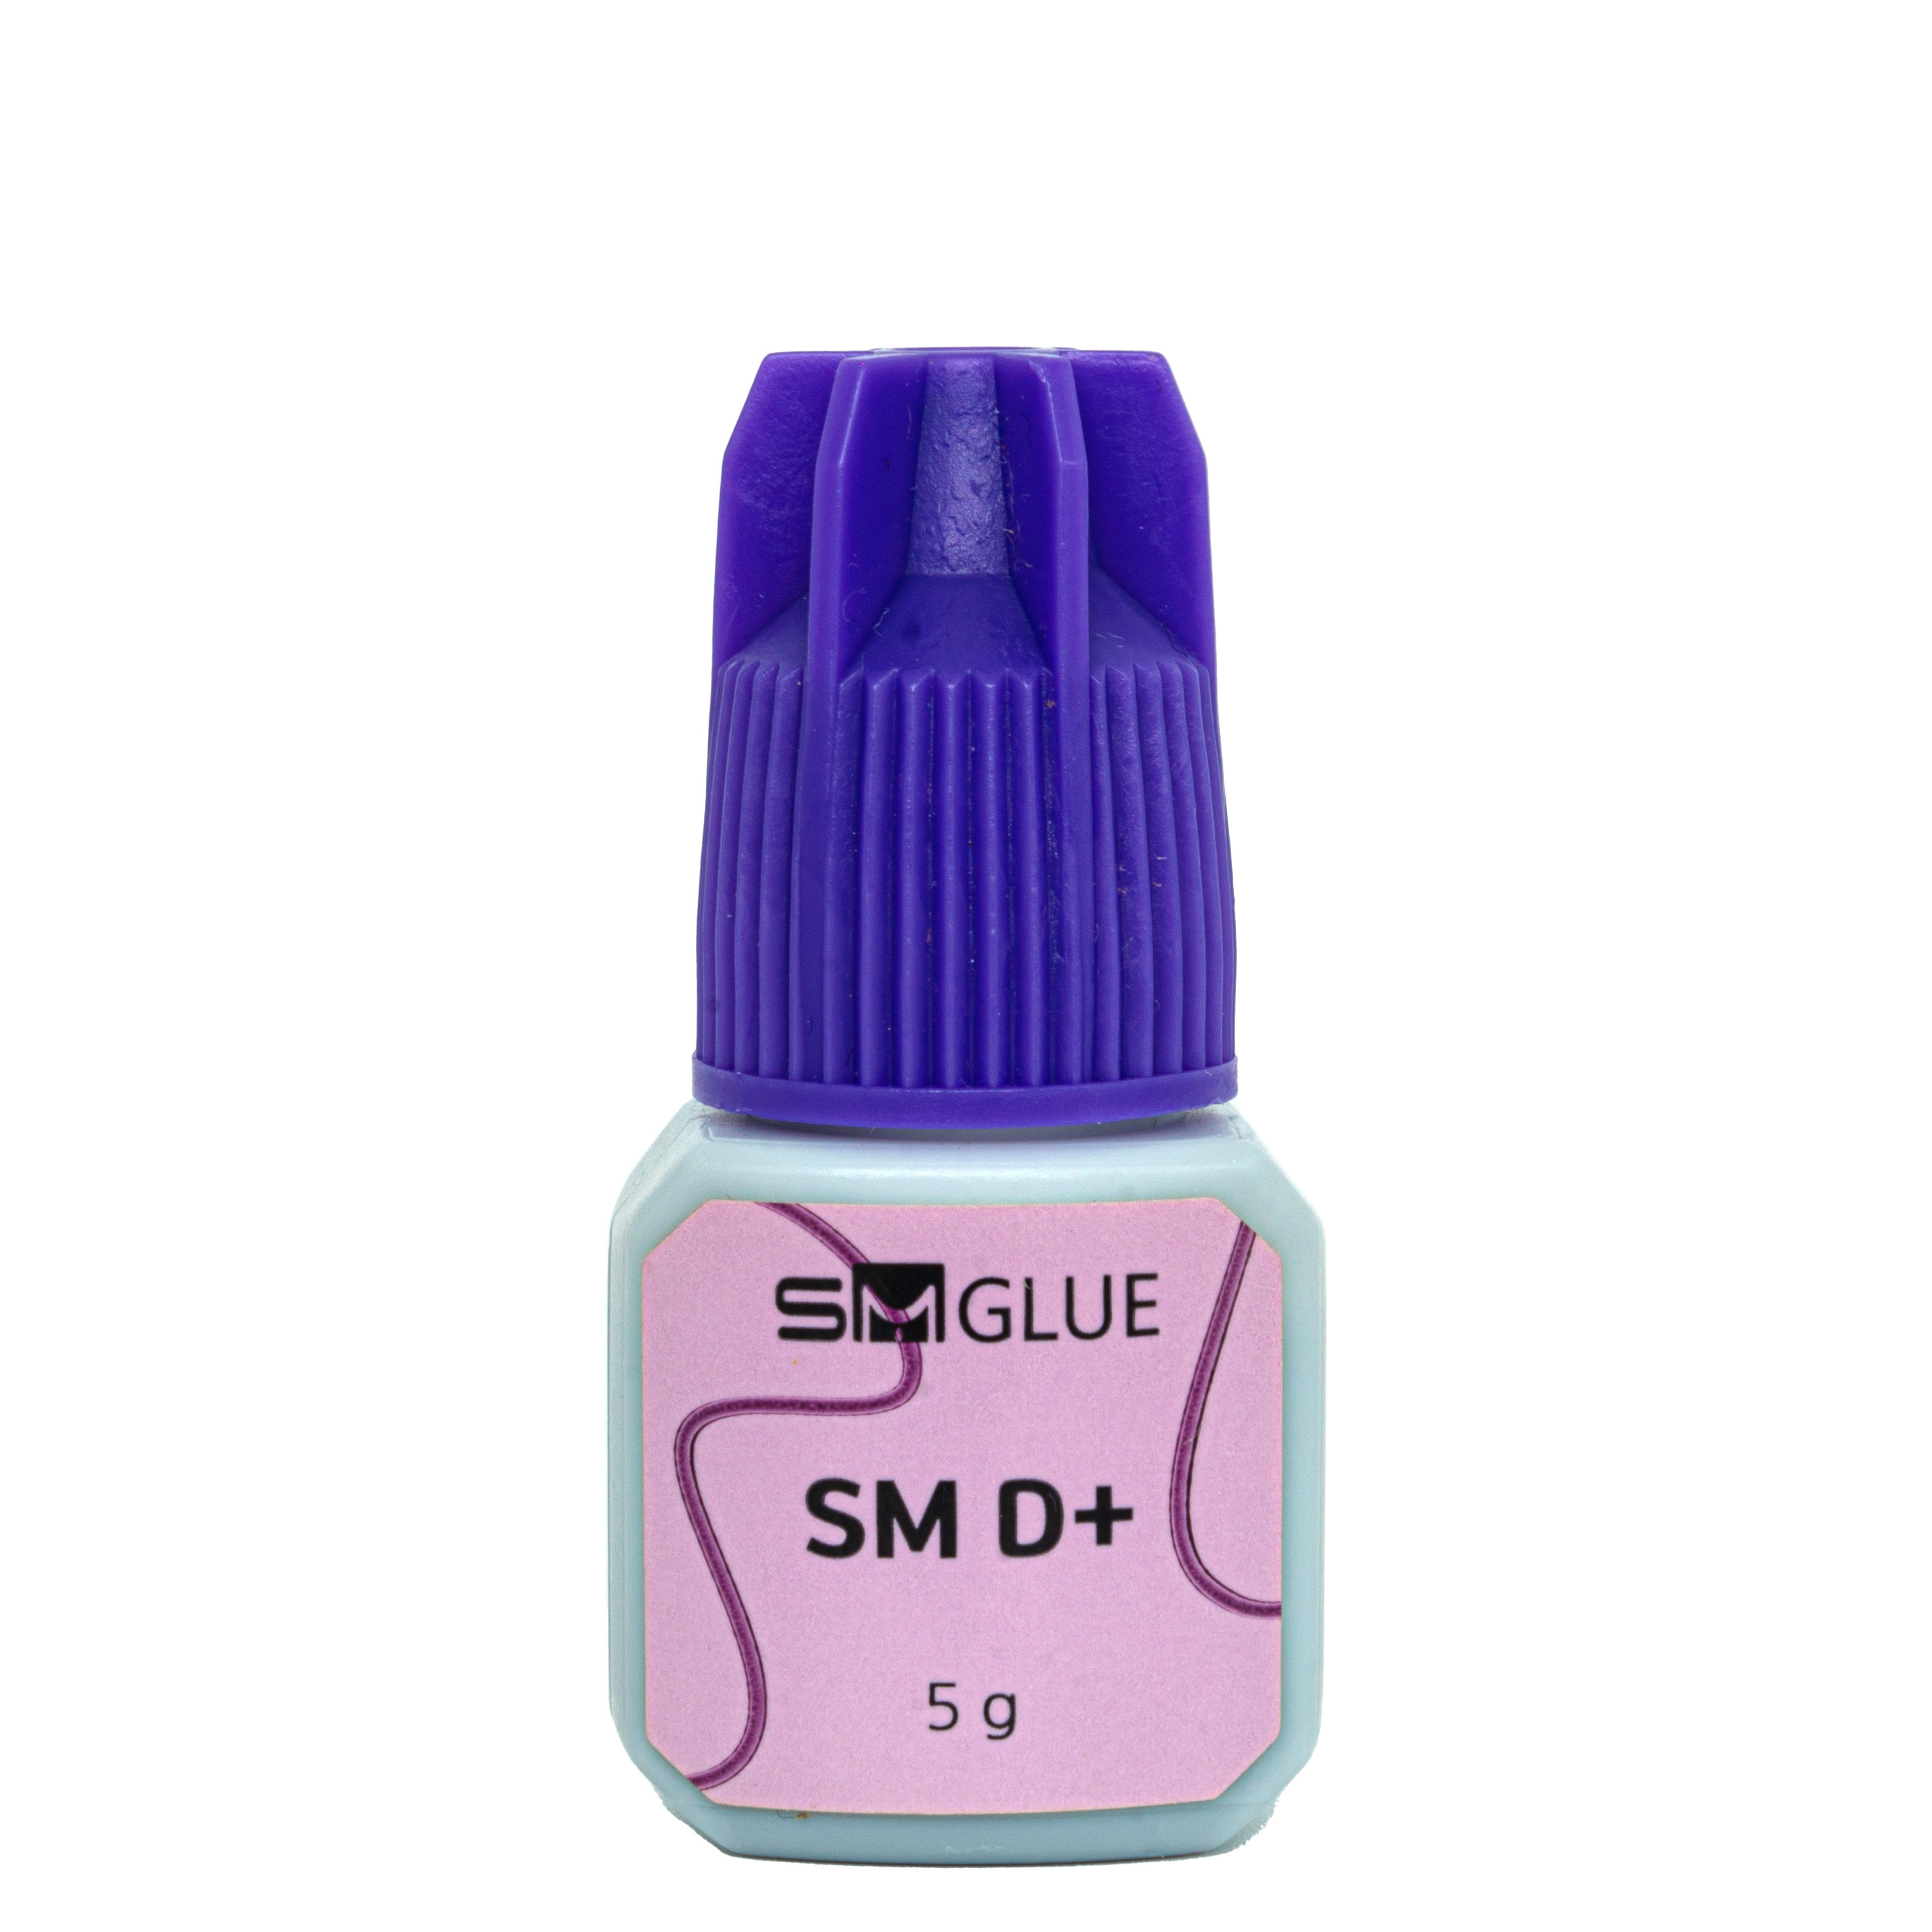 SM GLUE İpek Kirpik Yapıştırıcı Sıvı Tipi D+ 5 gr